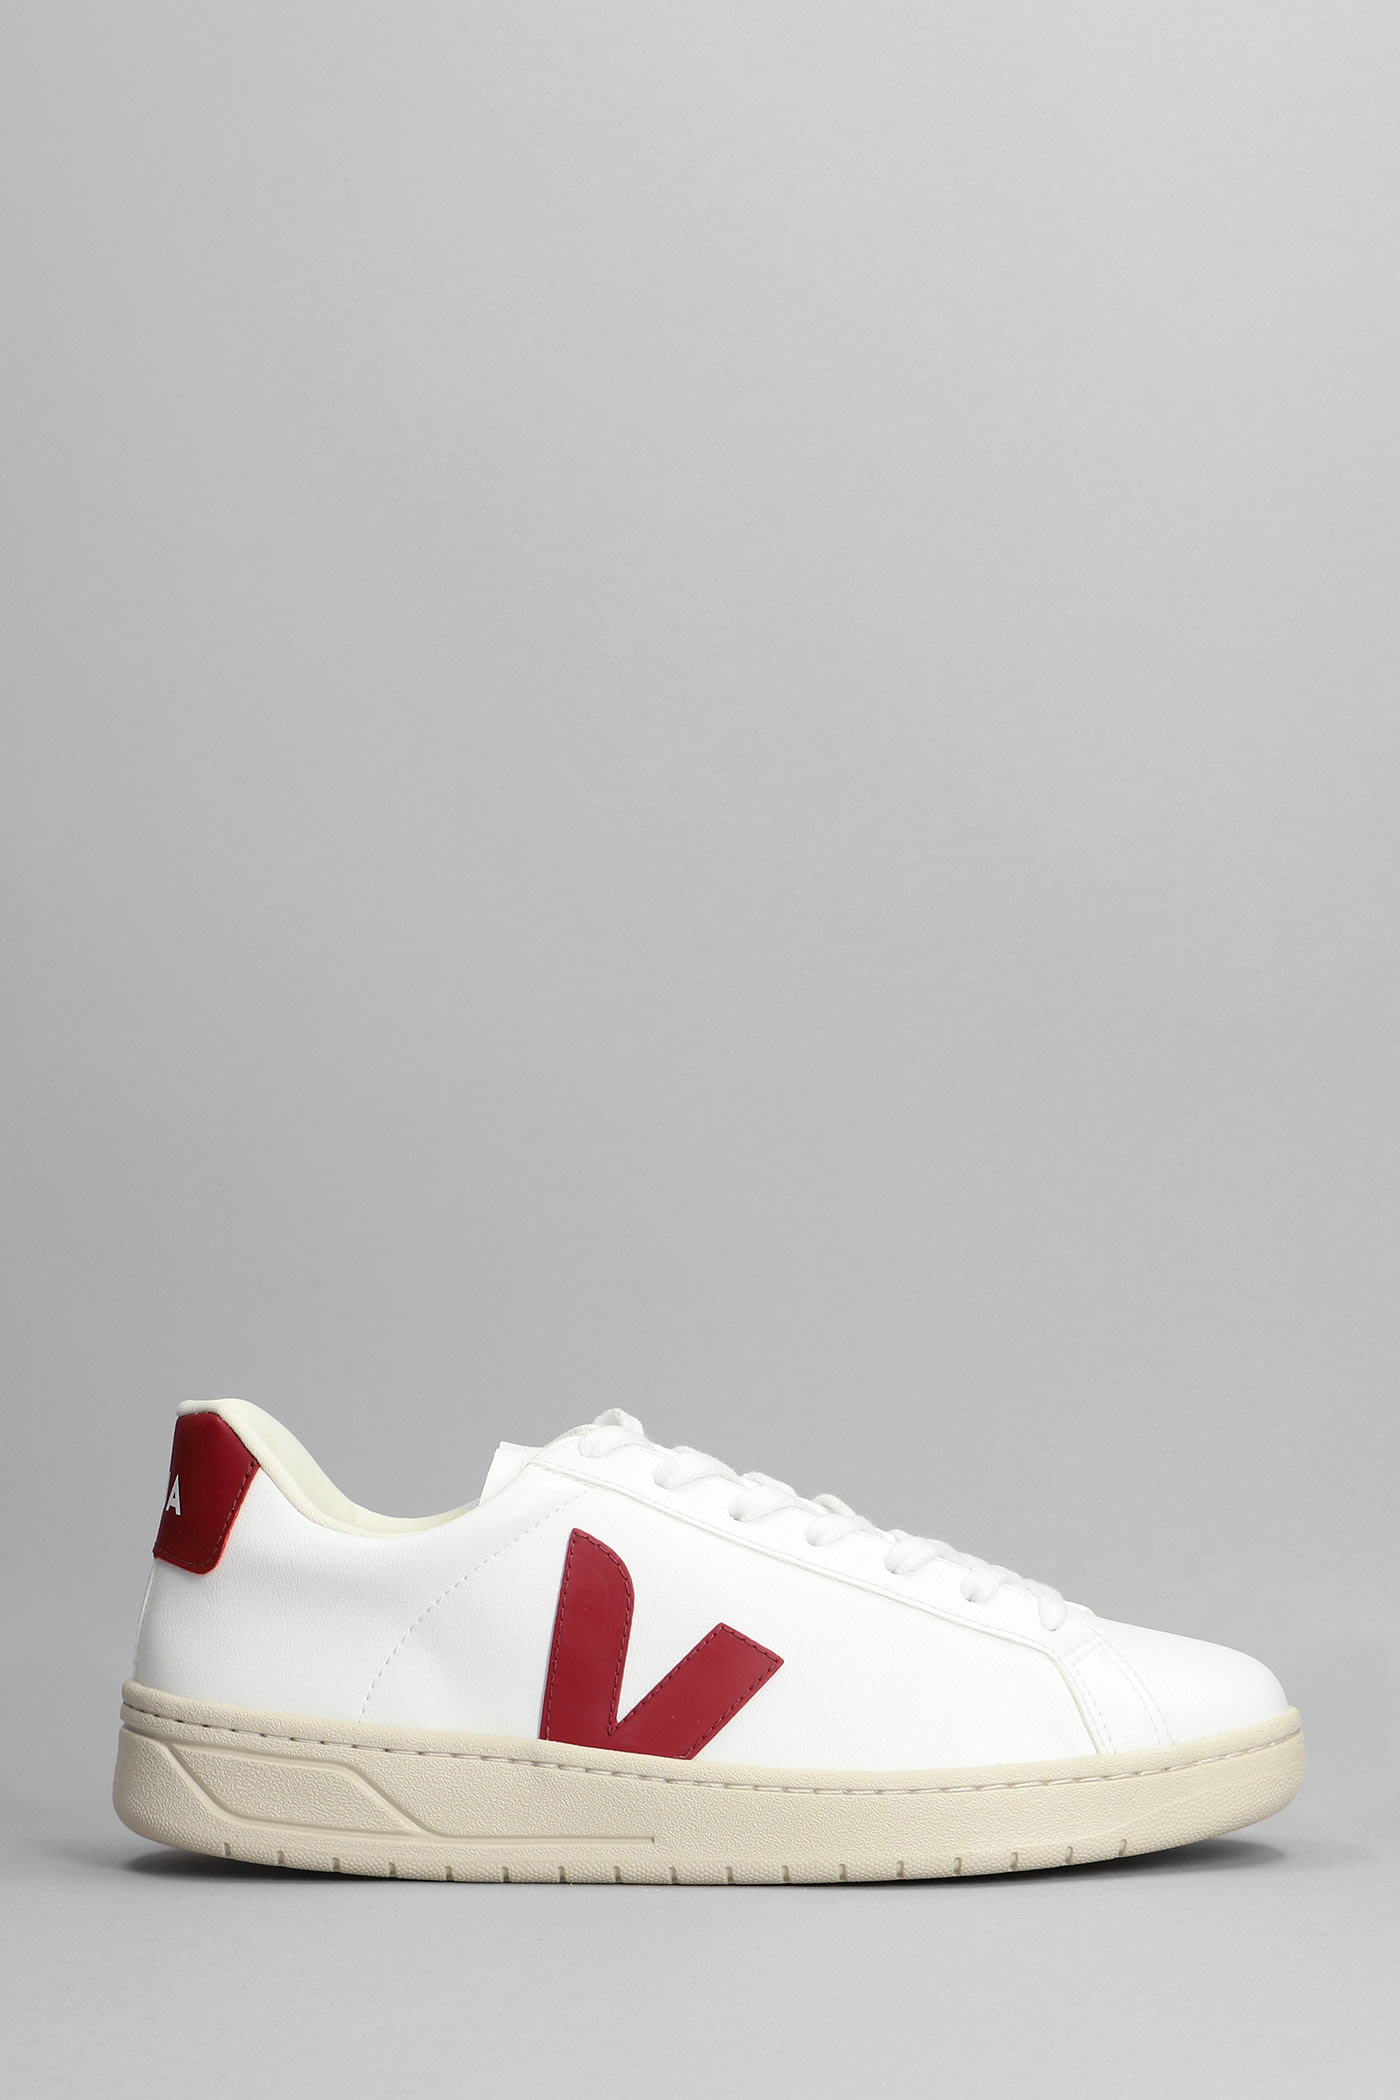 Veja Urca Cwl Sneakers In White Leather